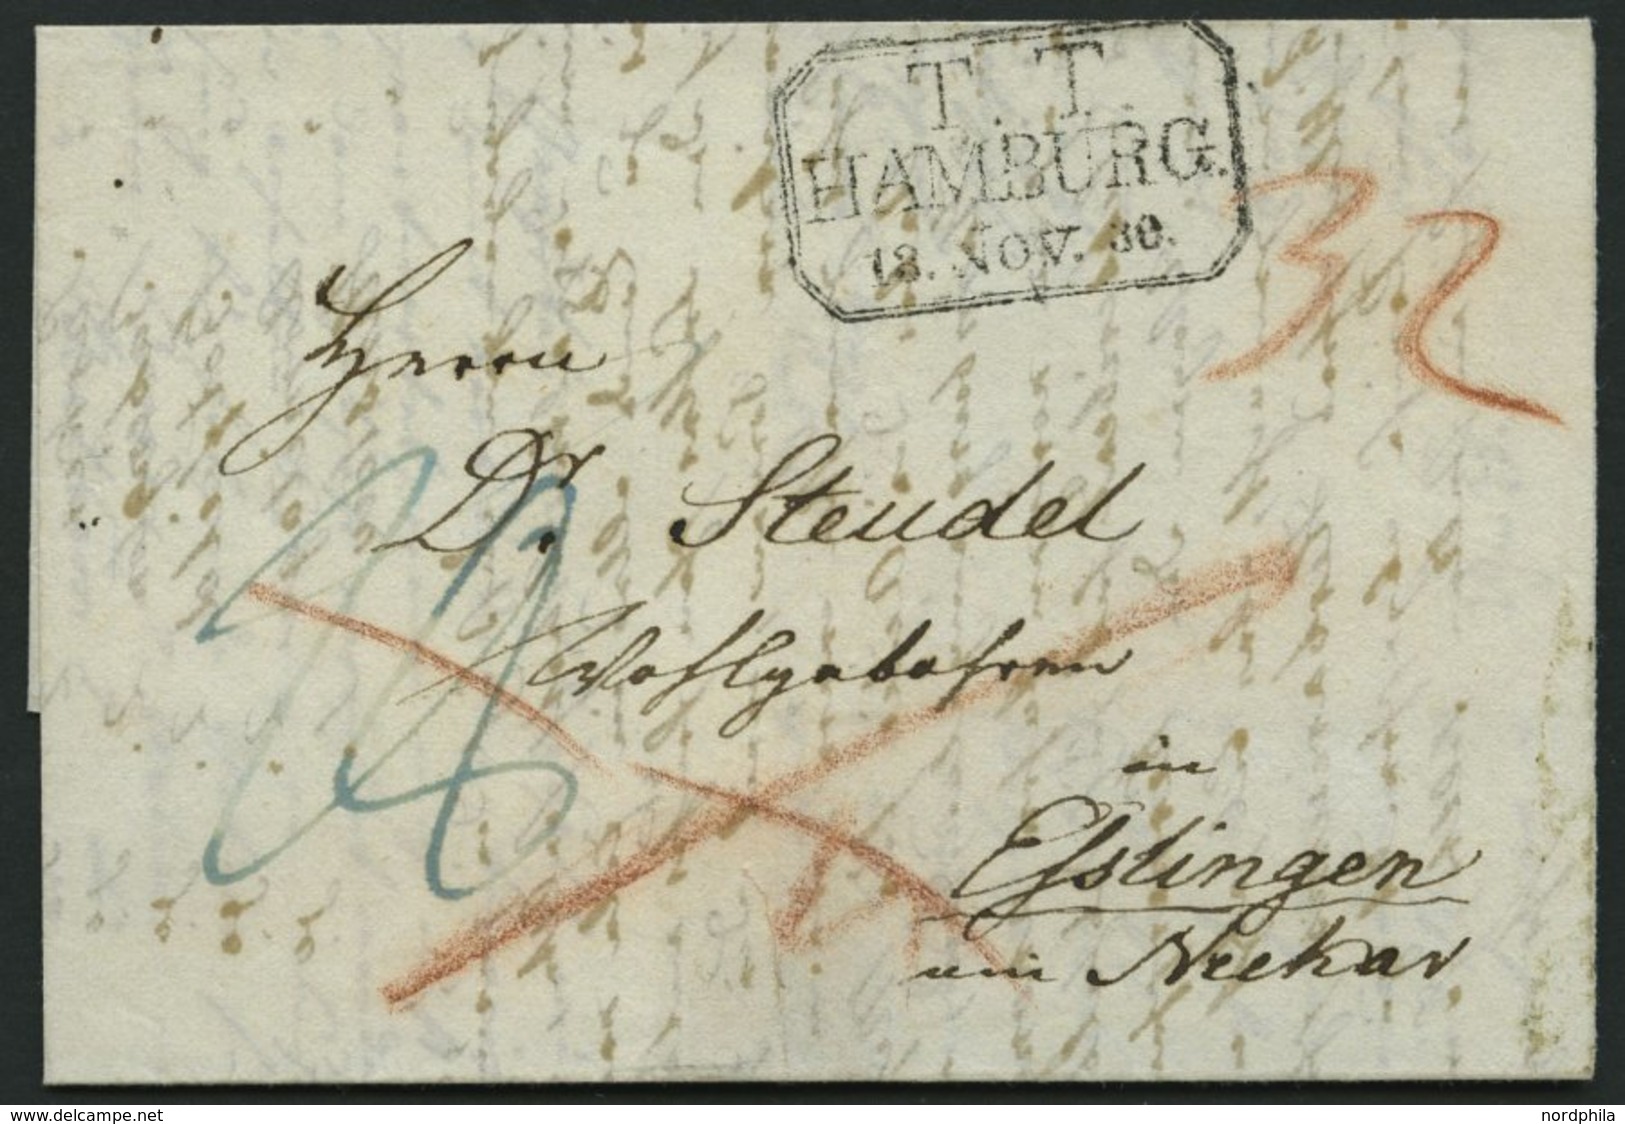 HAMBURG - THURN UND TAXISCHES O.P.A. 1830, T.T. HAMBURG, R3 Auf Forwarded-Letter Von London Nach Elstingen Am Neckar, Pr - Vorphilatelie